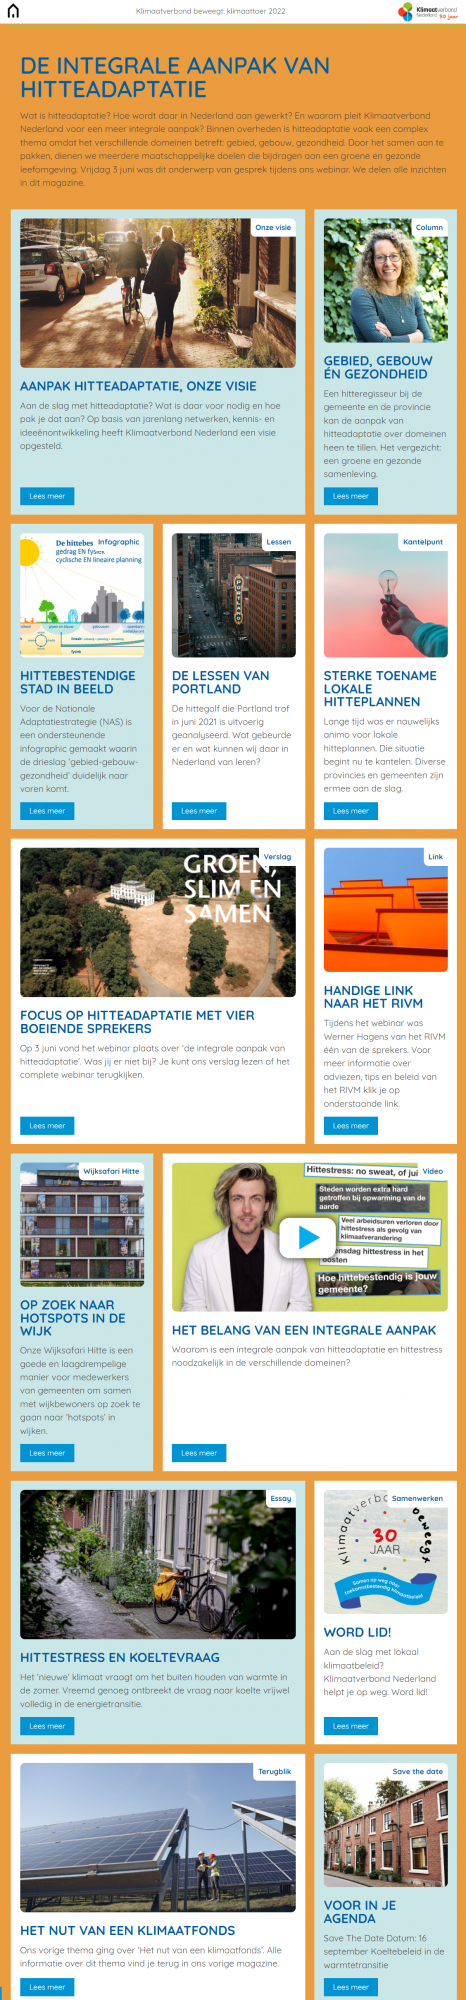 Online Magazine 3 - De integrale aanpak van hitteadaptatie - Klimaatverbond Nederland